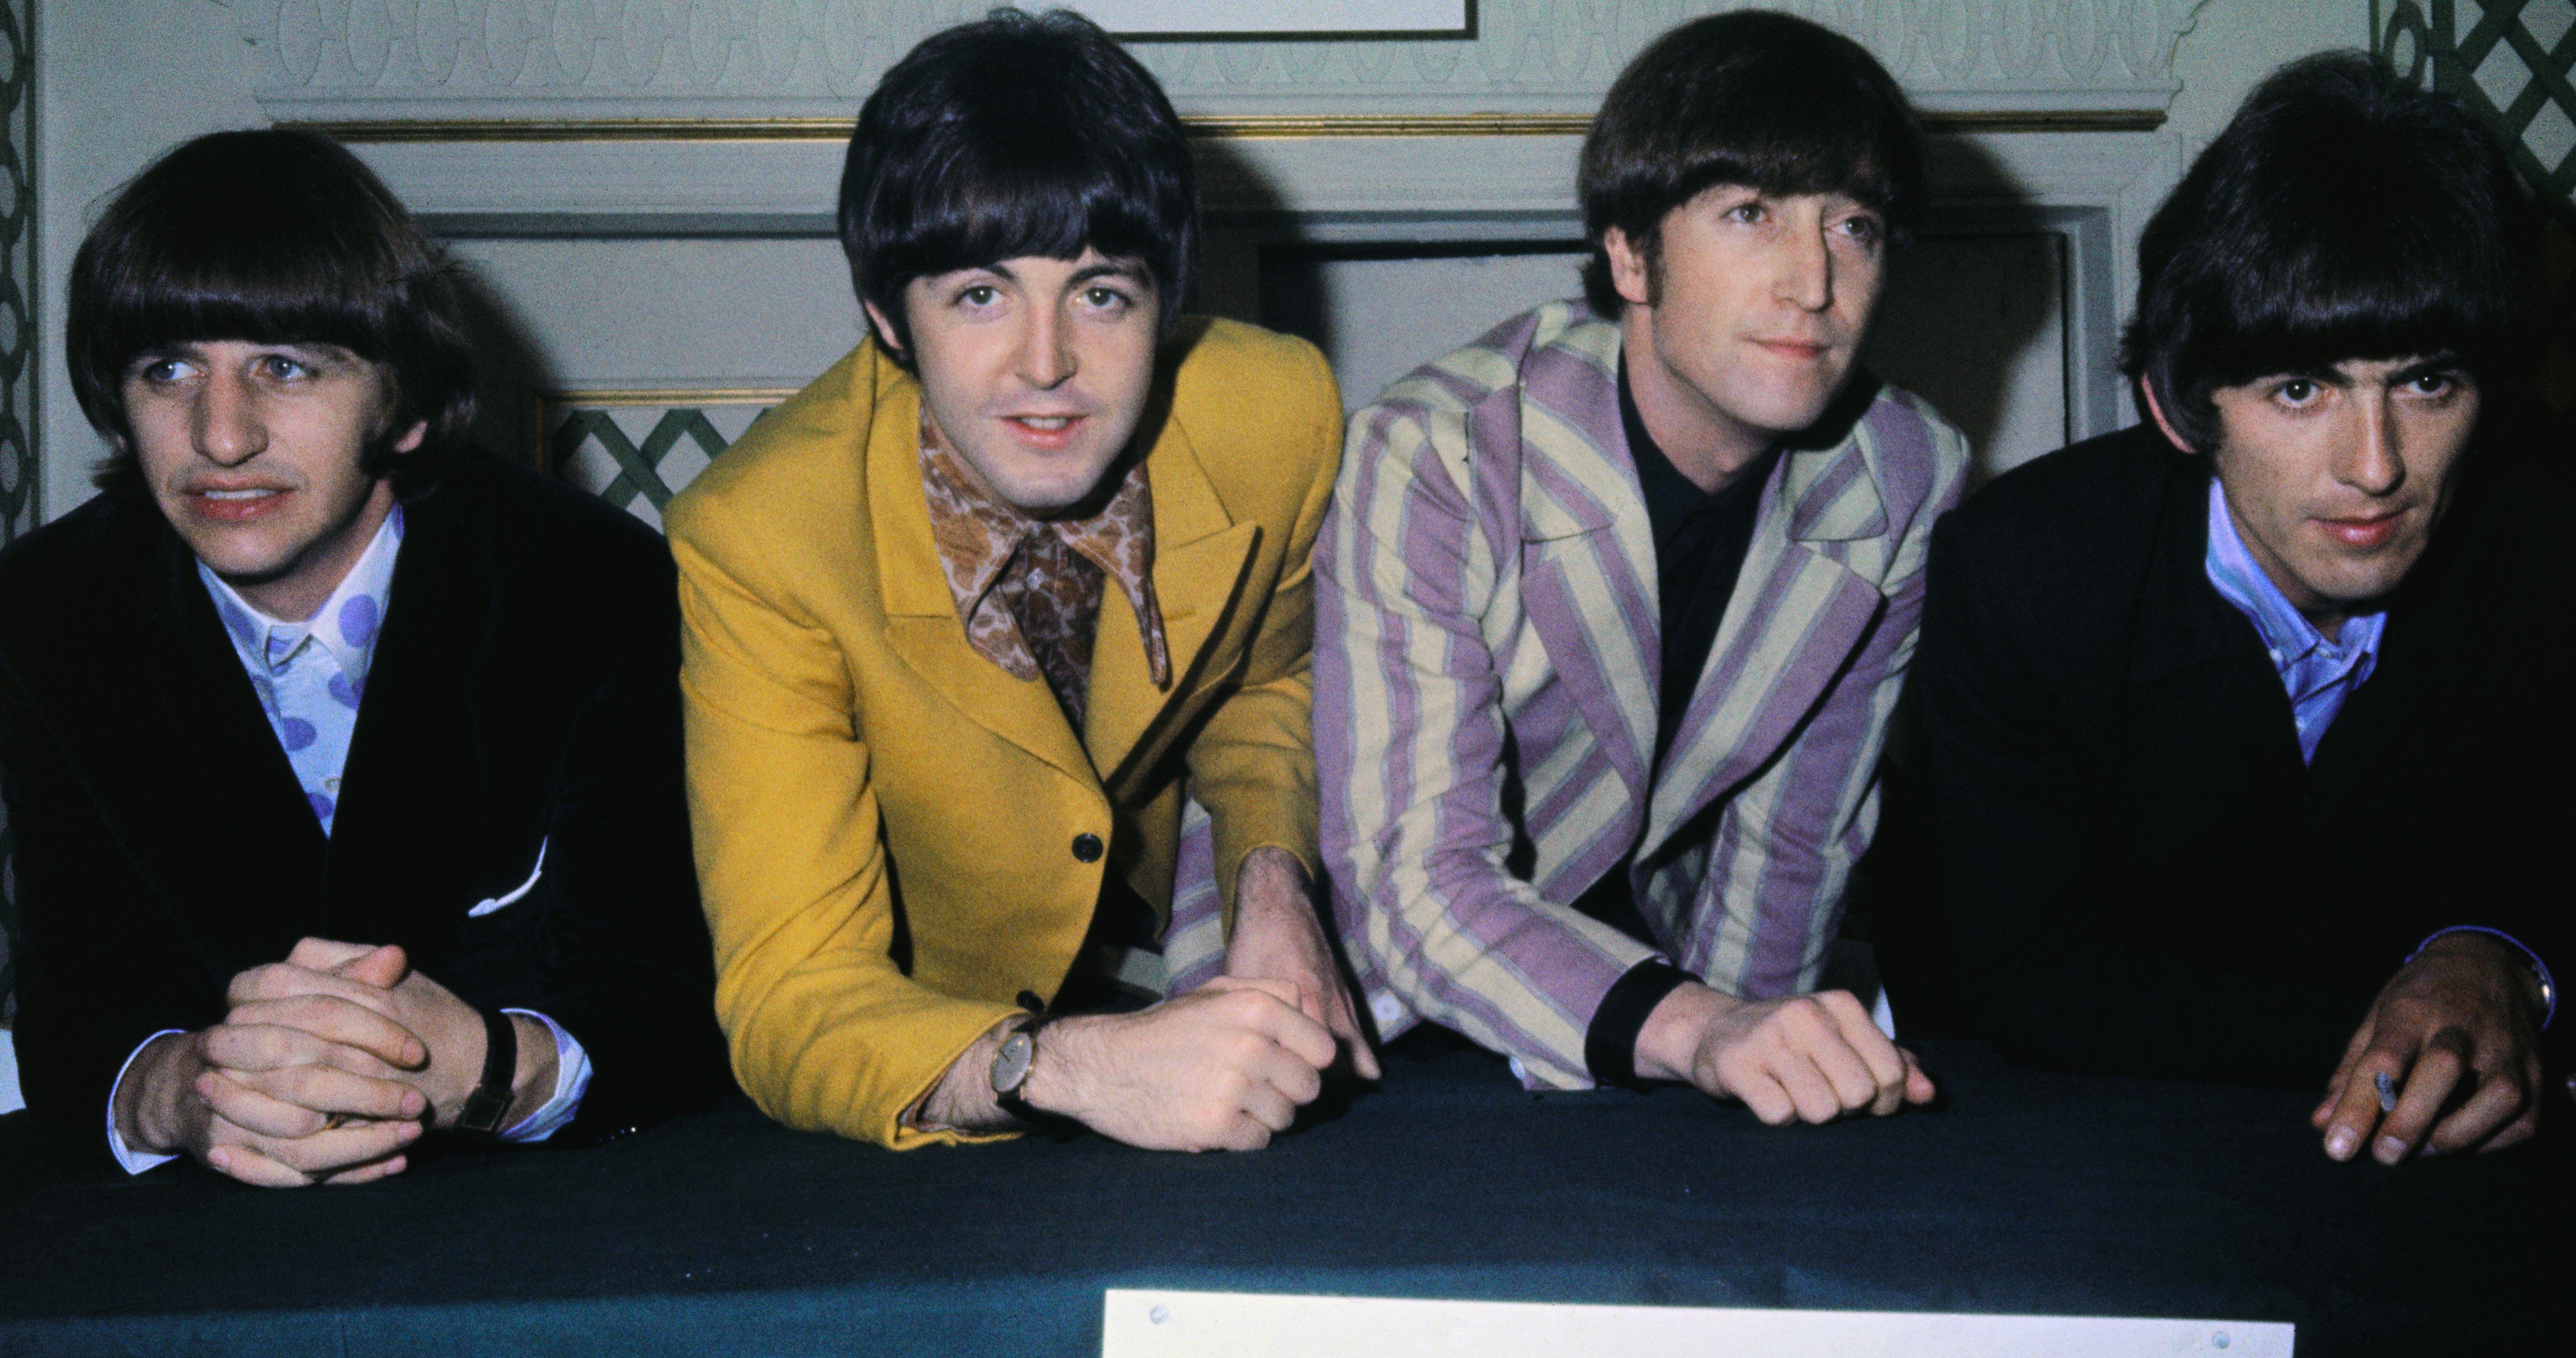 The Beatles at a table during their "Ob-La-Di, Ob-La-Da" era